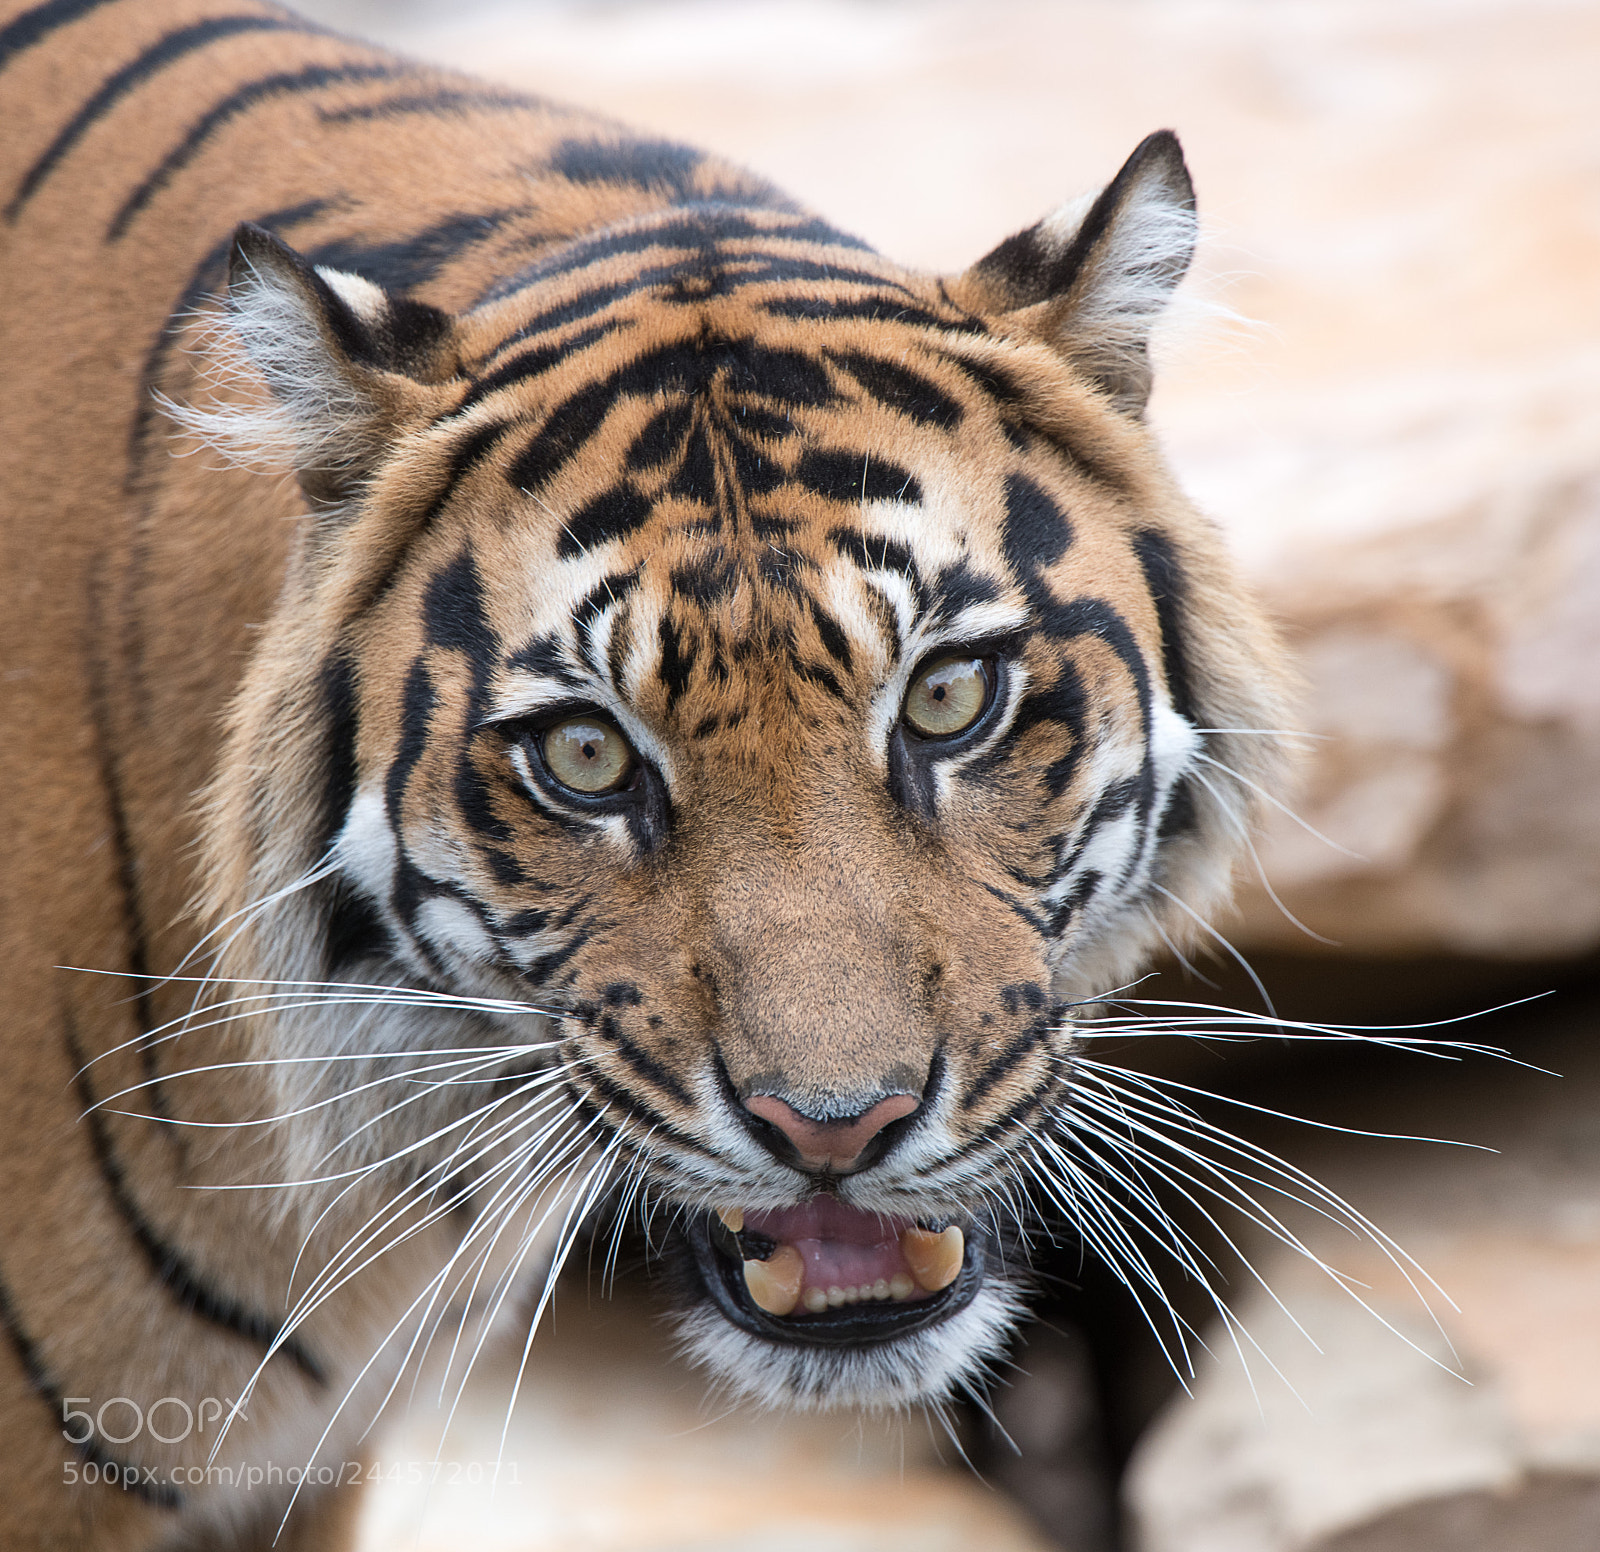 Nikon D850 sample photo. Sumatran tiger photography